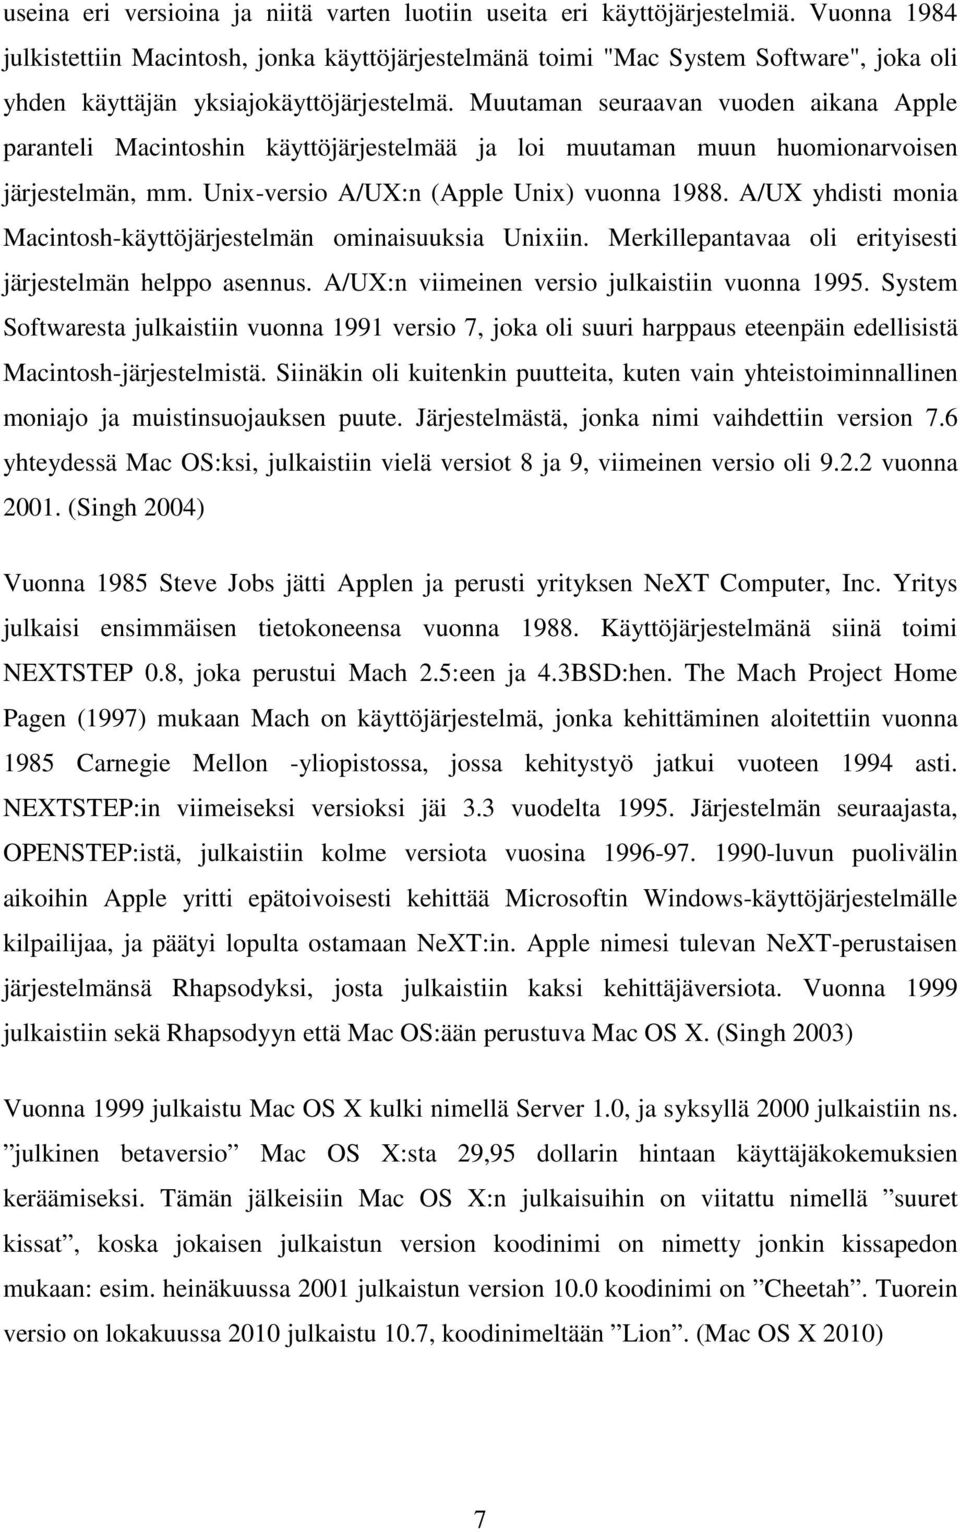 Muutaman seuraavan vuoden aikana Apple paranteli Macintoshin käyttöjärjestelmää ja loi muutaman muun huomionarvoisen järjestelmän, mm. Unix-versio A/UX:n (Apple Unix) vuonna 1988.